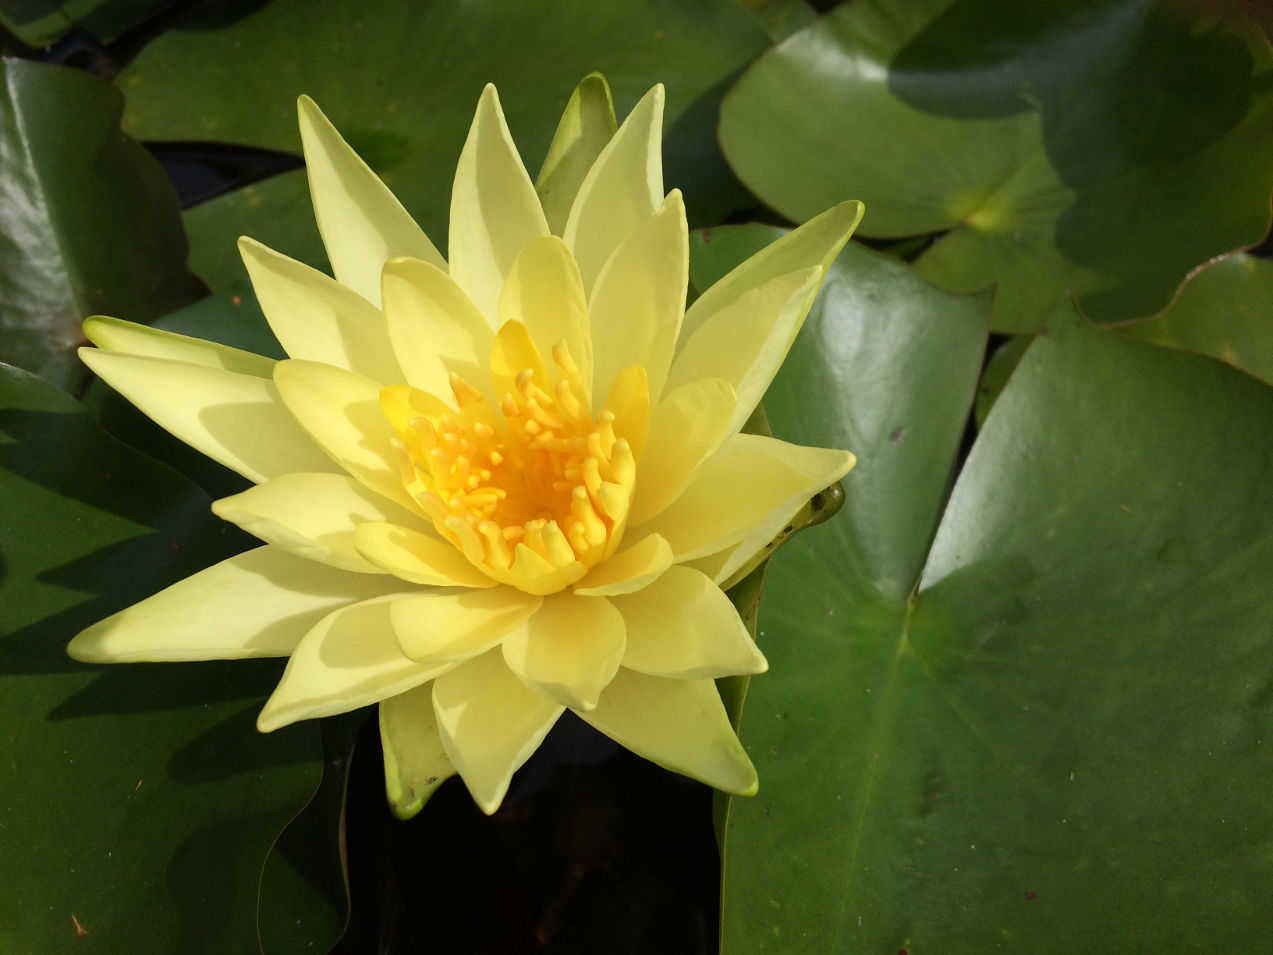 Welch Dekoartikel blühende duftende Deko für den Garten Teich Gelbe Seerose C 